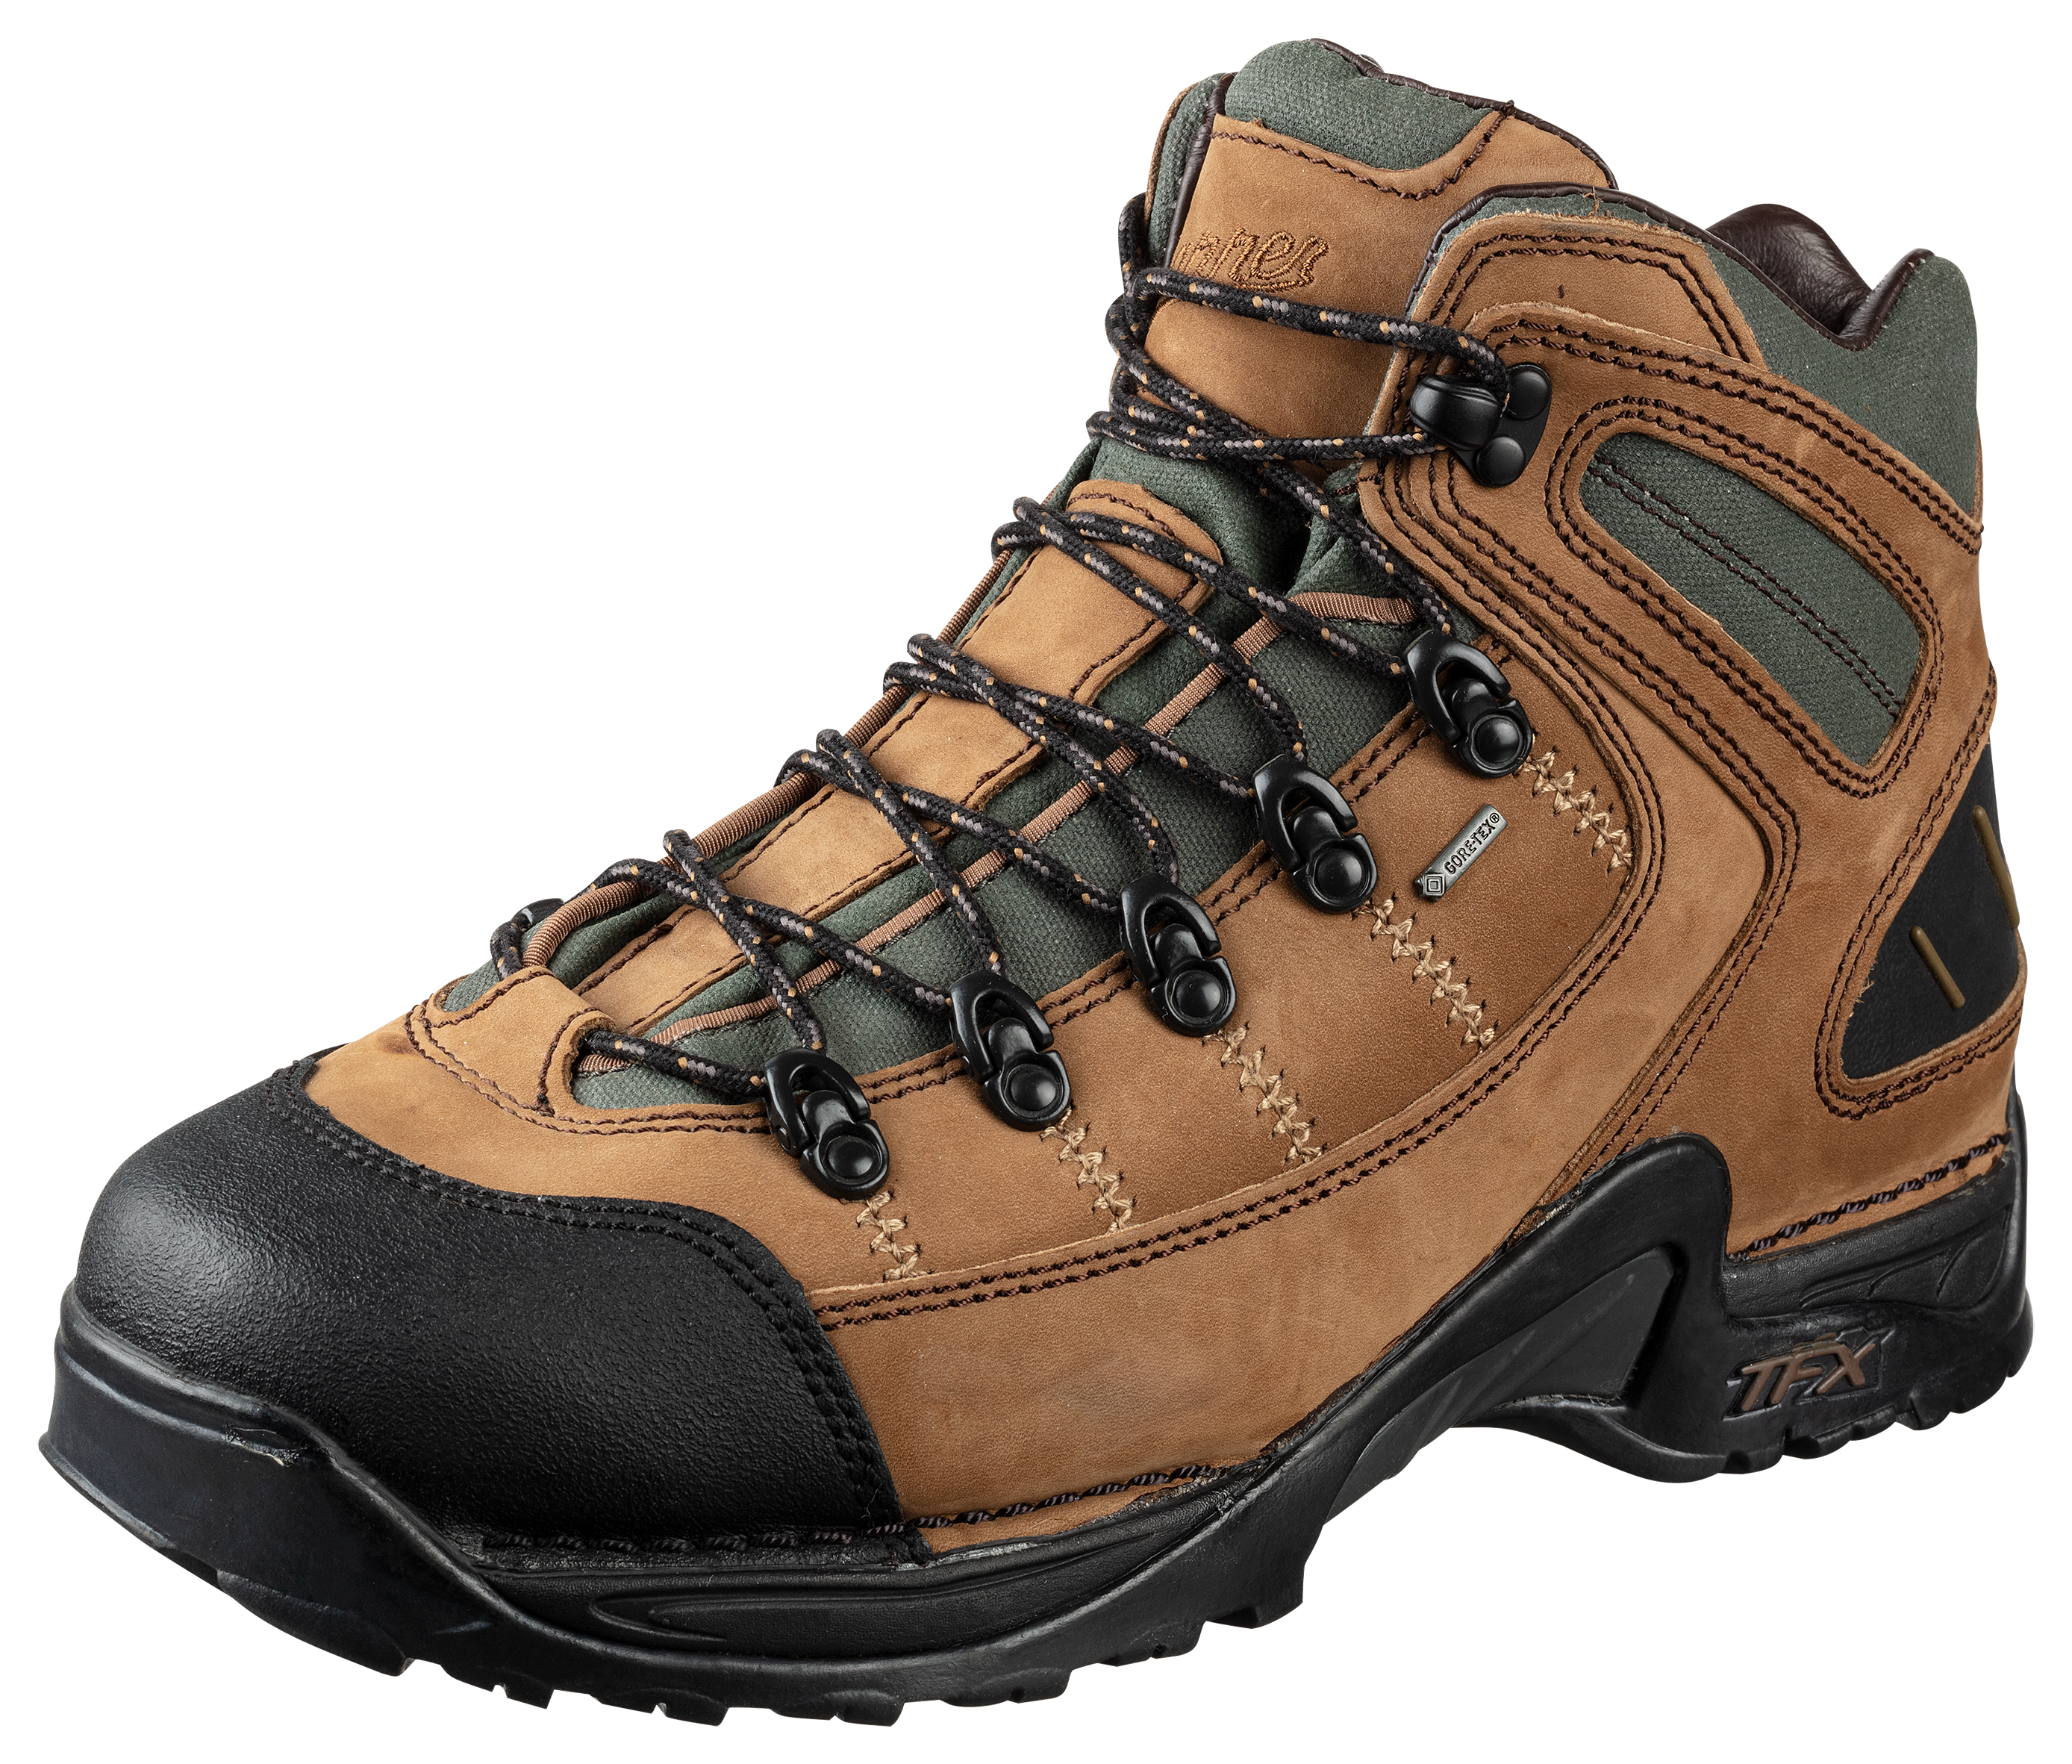 Danner 453 GORE-TEX Waterproof Hiking Boots for Men - Dark Tan - 13M